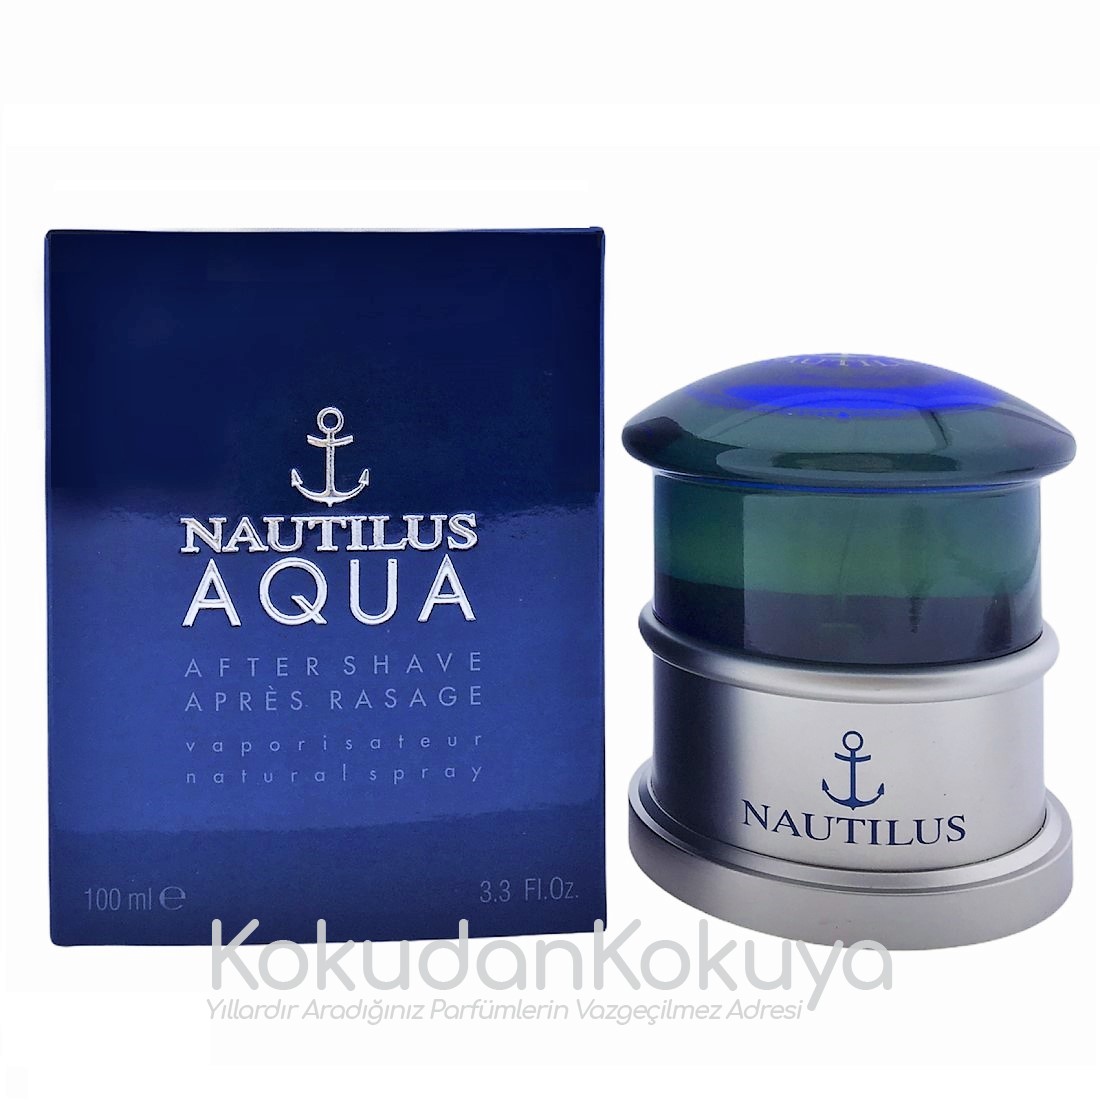 NAUTILUS Aqua Nautilus (Vintage) Erkek Cilt Bakım Ürünleri Erkek 100ml Traş Losyonu Sprey 